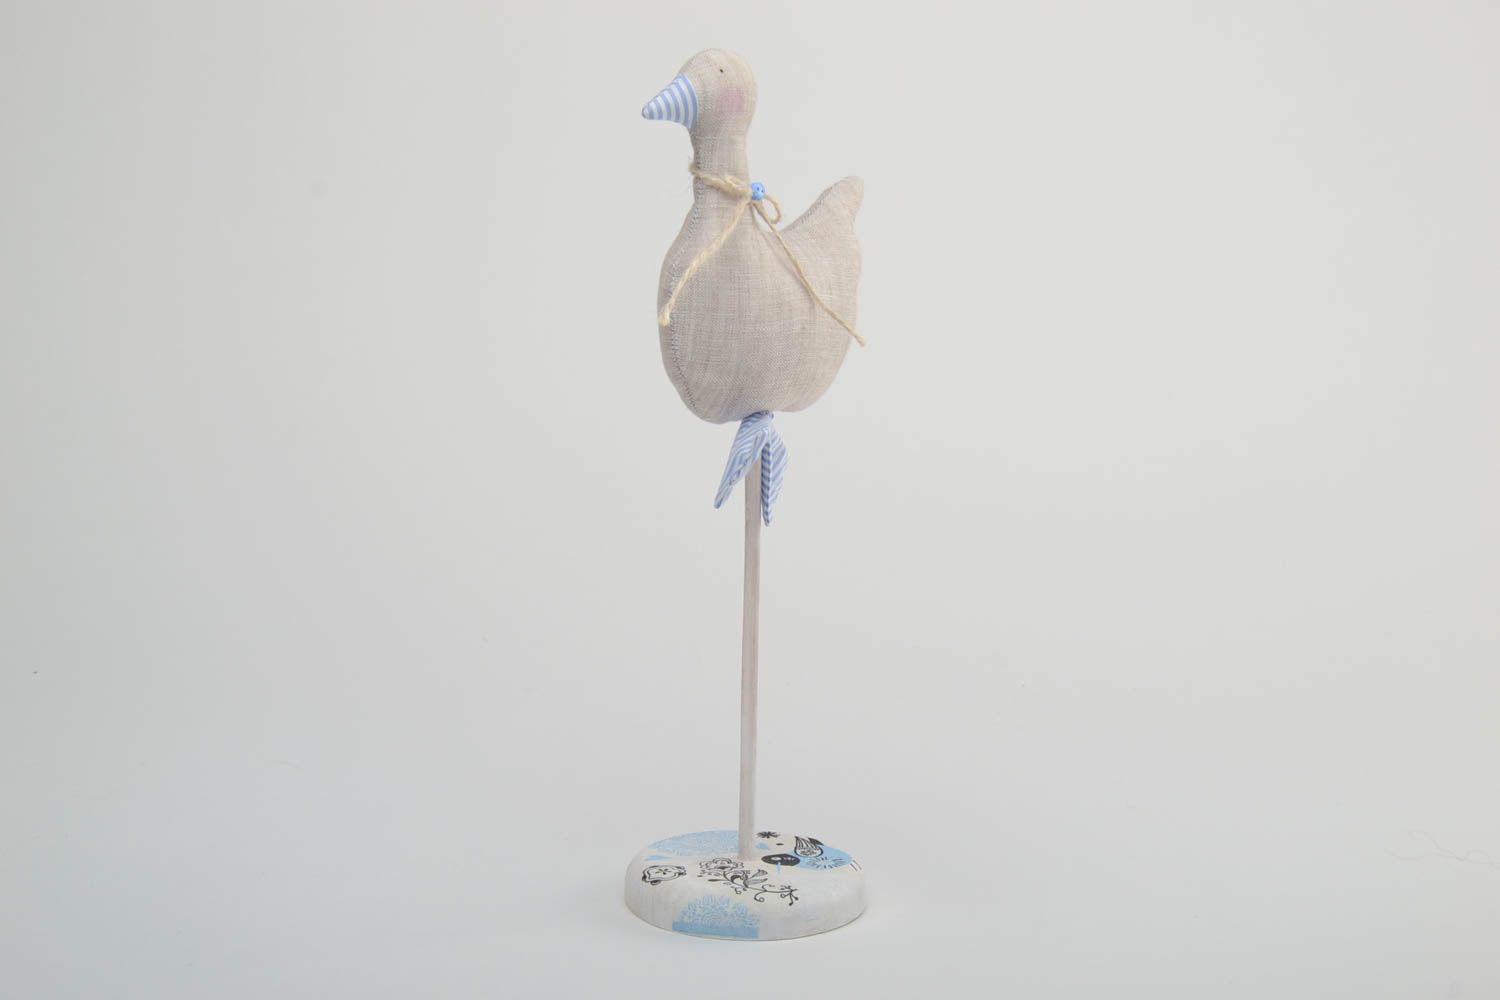 Textil Figur handmade für Dekor aus Leinen auf Holzbasis weiche Ente wunderbar foto 2